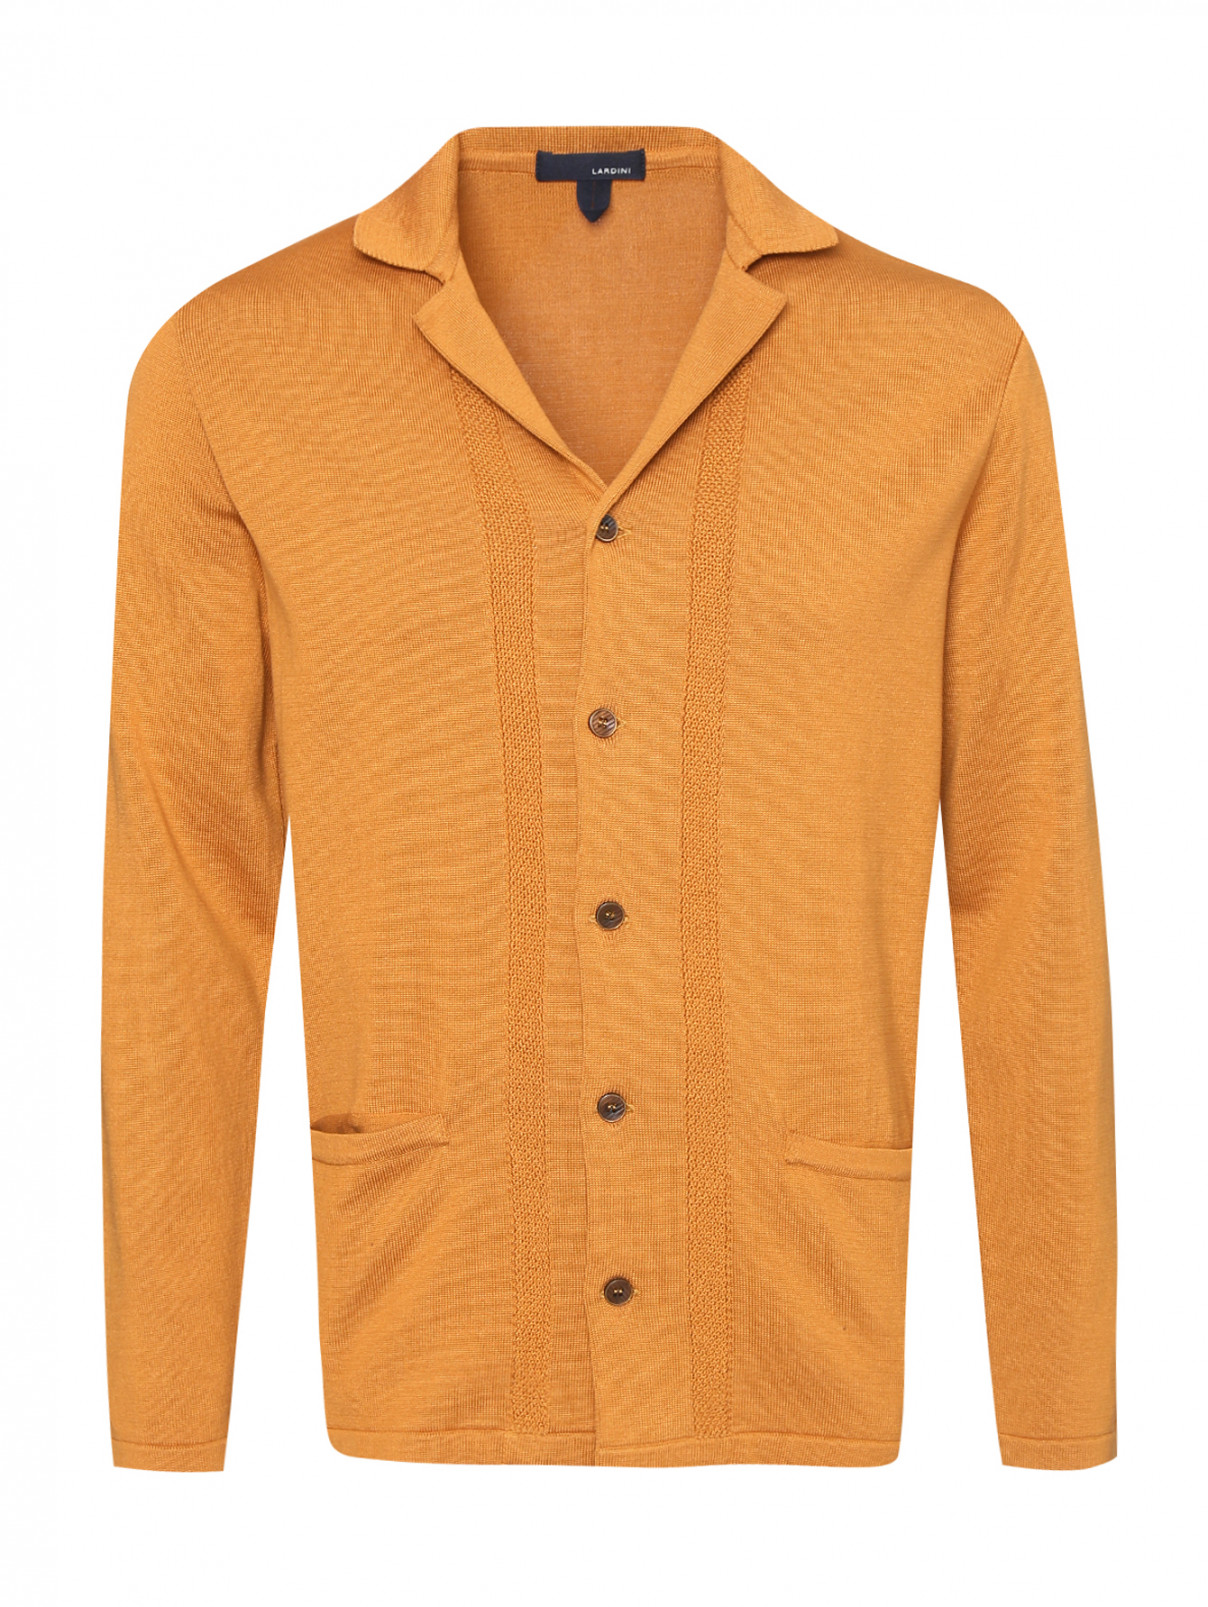 Кардиган из хлопка на пуговицах с карманами LARDINI  –  Общий вид  – Цвет:  Оранжевый